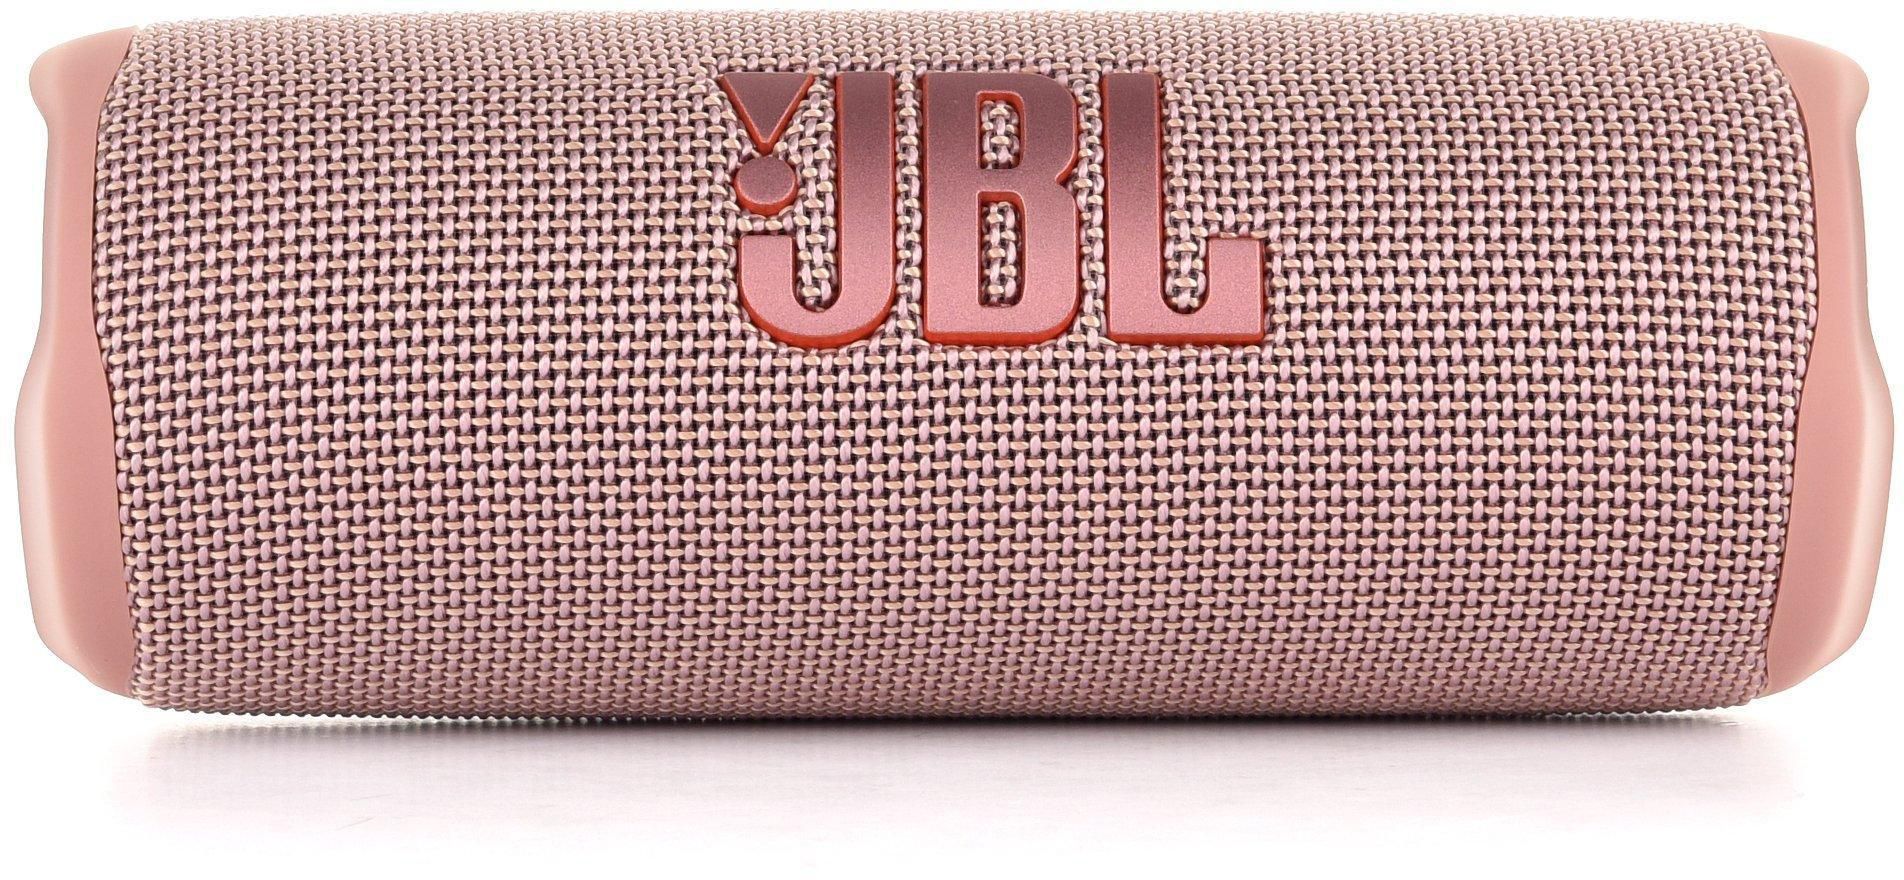 JBL Flip 6 Portable Bluetooth Speaker Waterproof Wireless, Pink